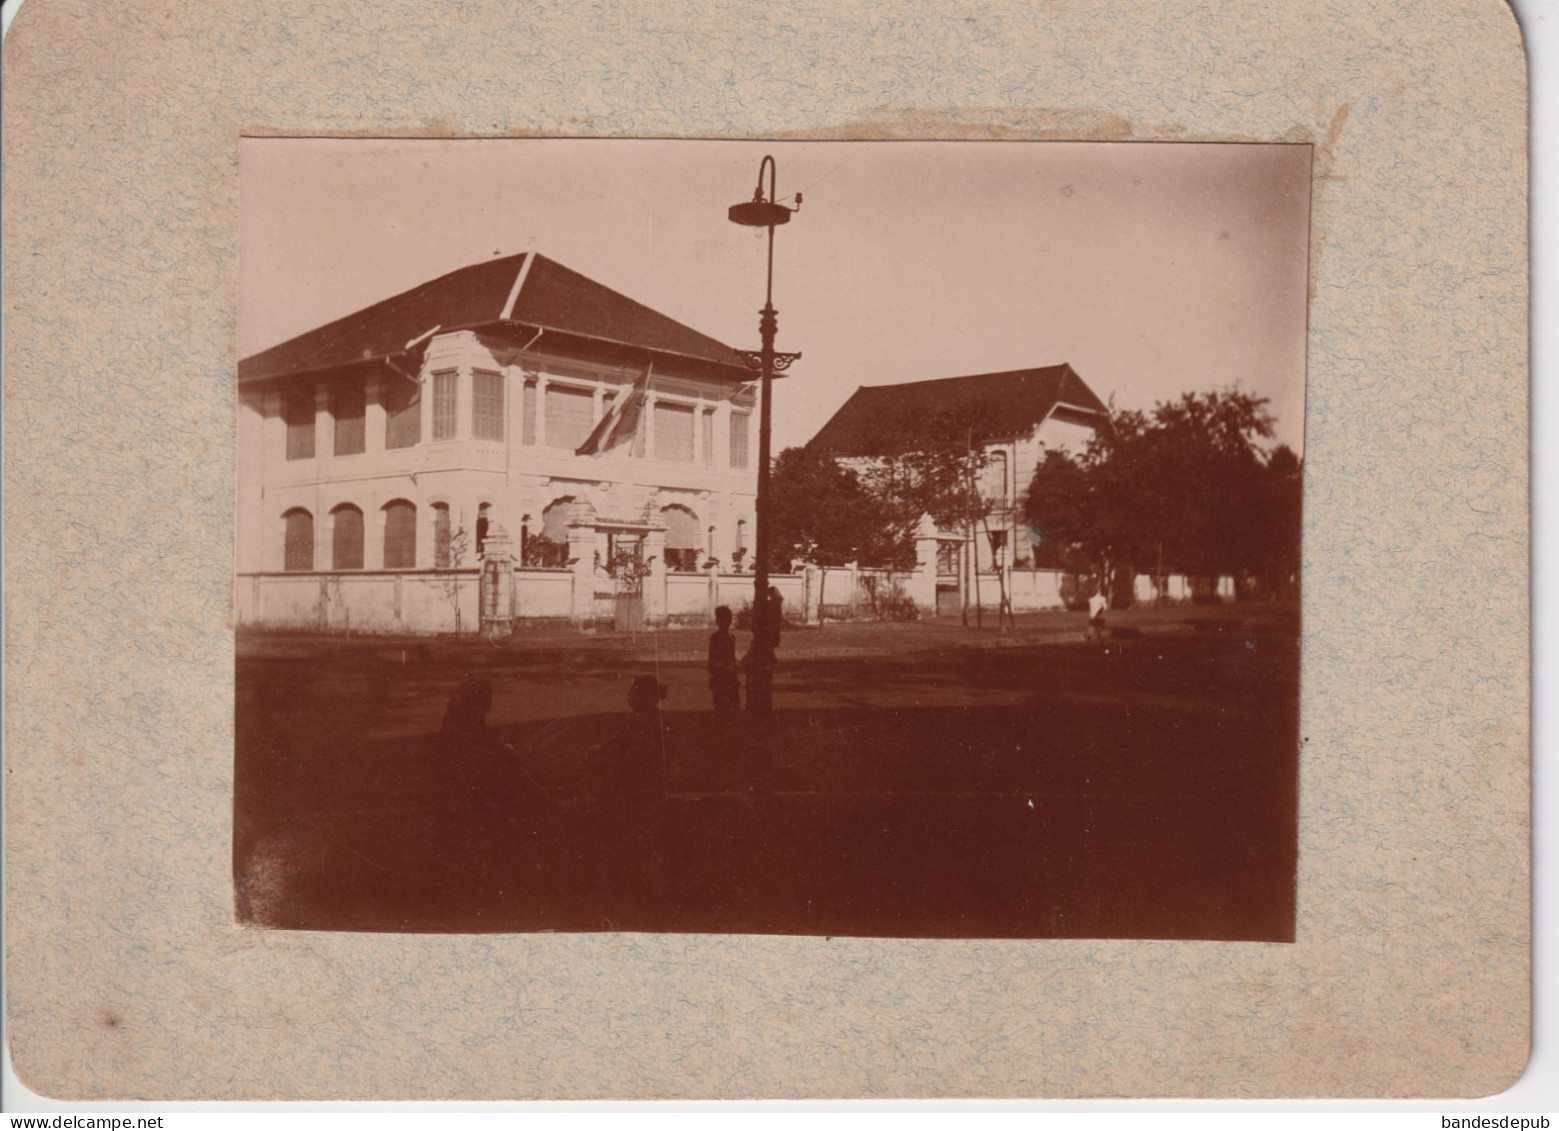 Photo Originale Ancienne Maison ASIE CAMBODGE PNOM PENH Maison Habitation Coloniale Collée Sur Carton - Asie